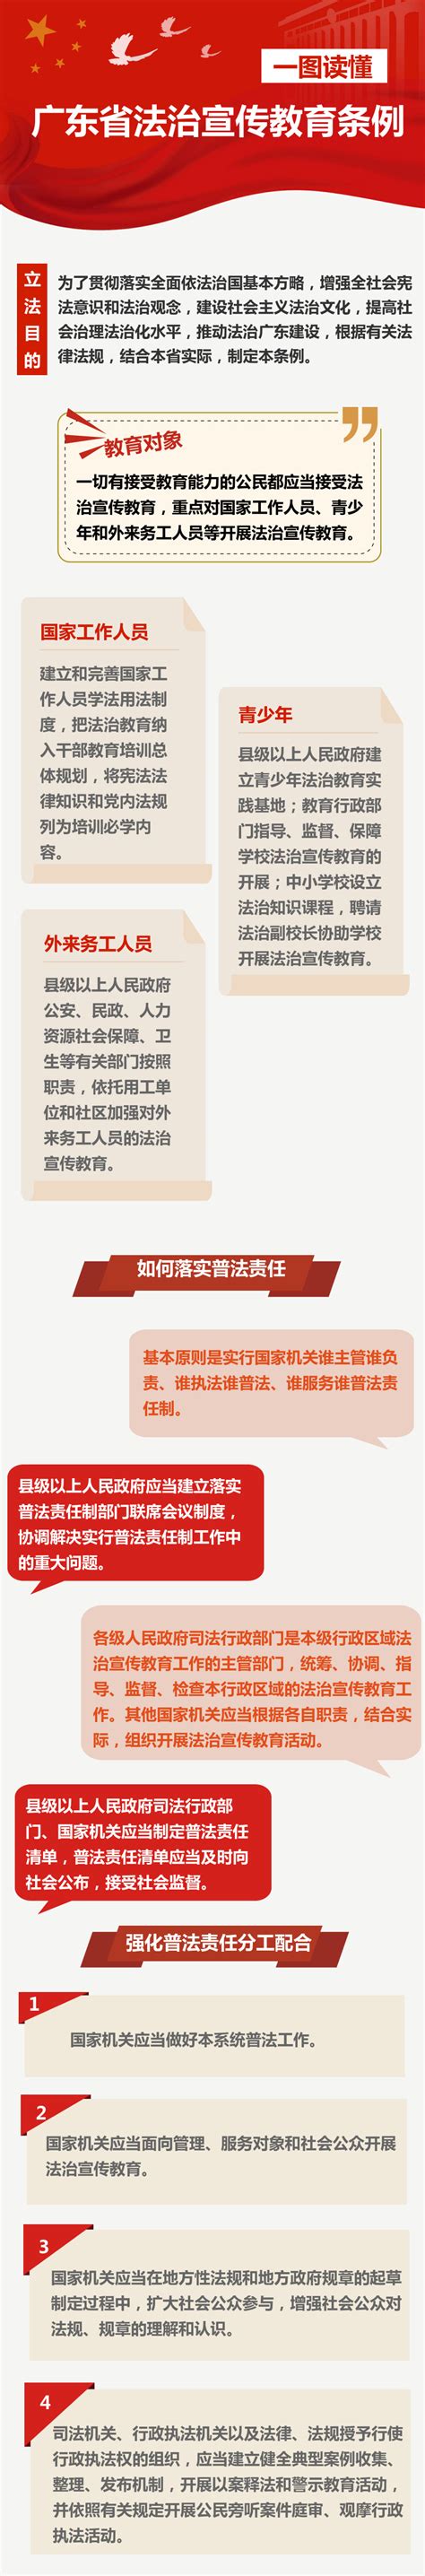 《广东省法治宣传教育条例》图解-政策解读-深圳市司法局网站